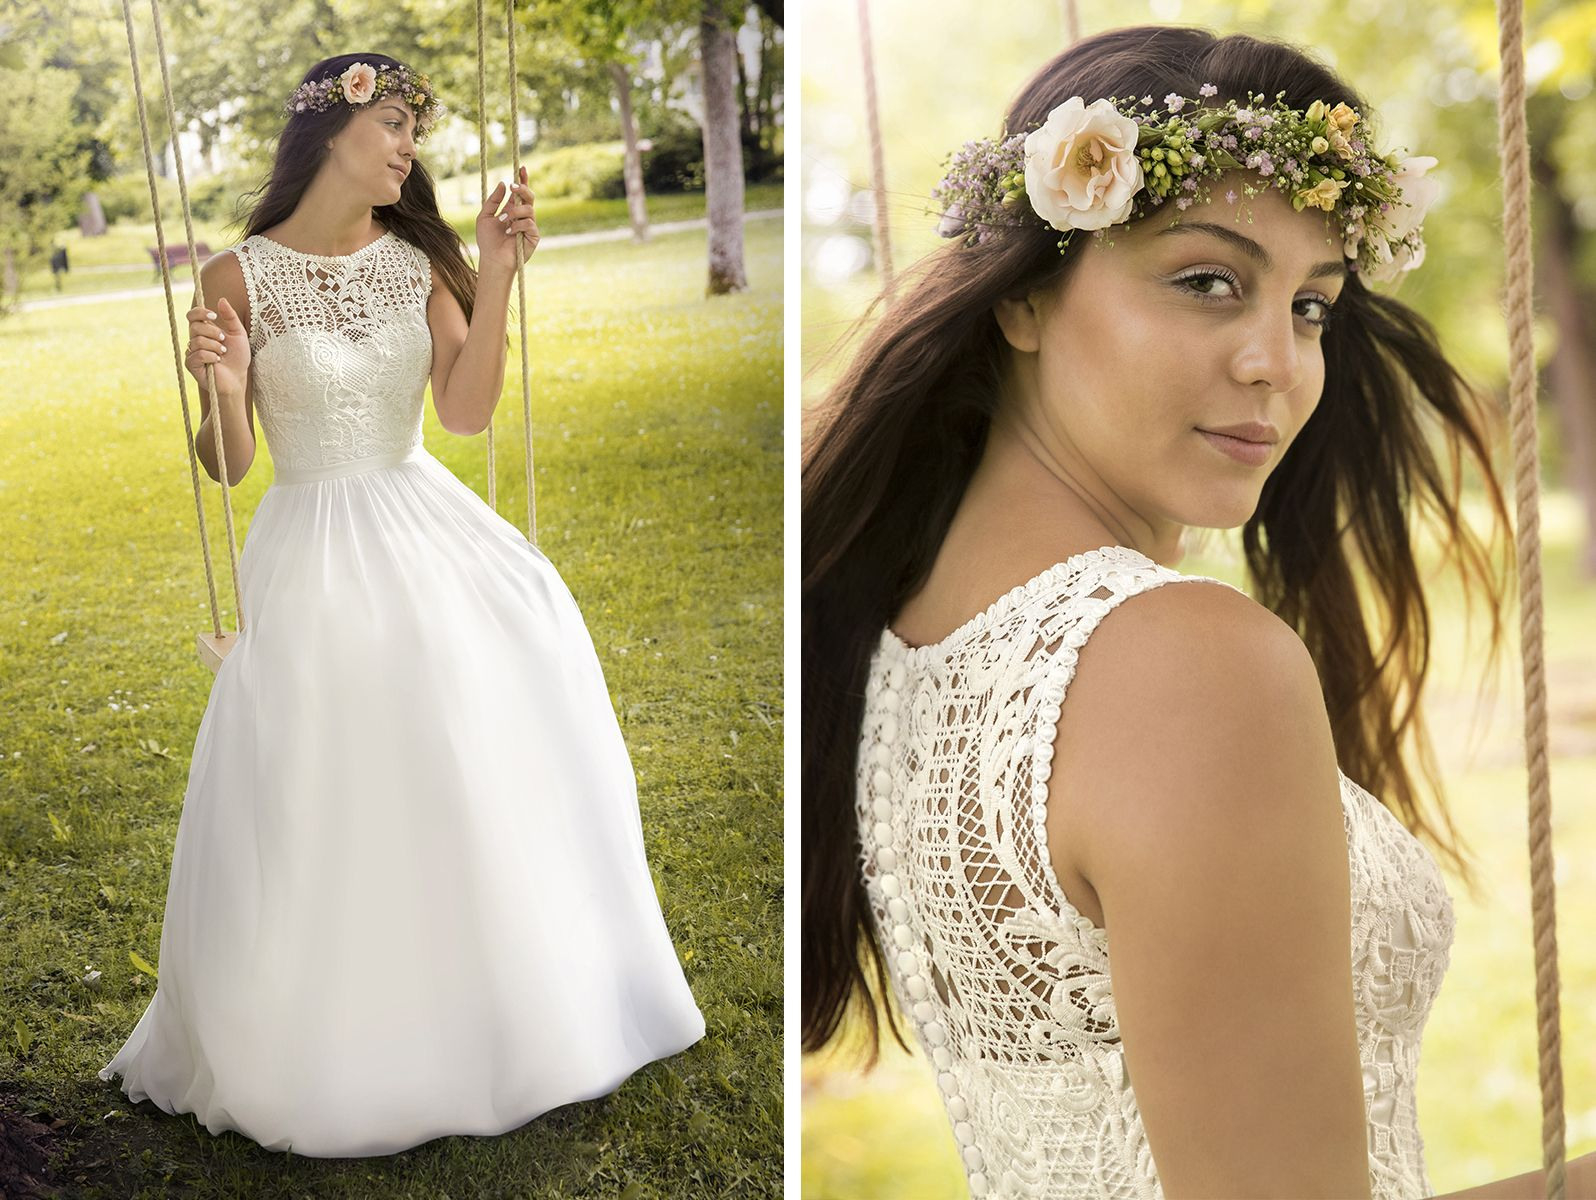 Kleemeier #brautmode #brautkleid #hochzeitskleid #bridal